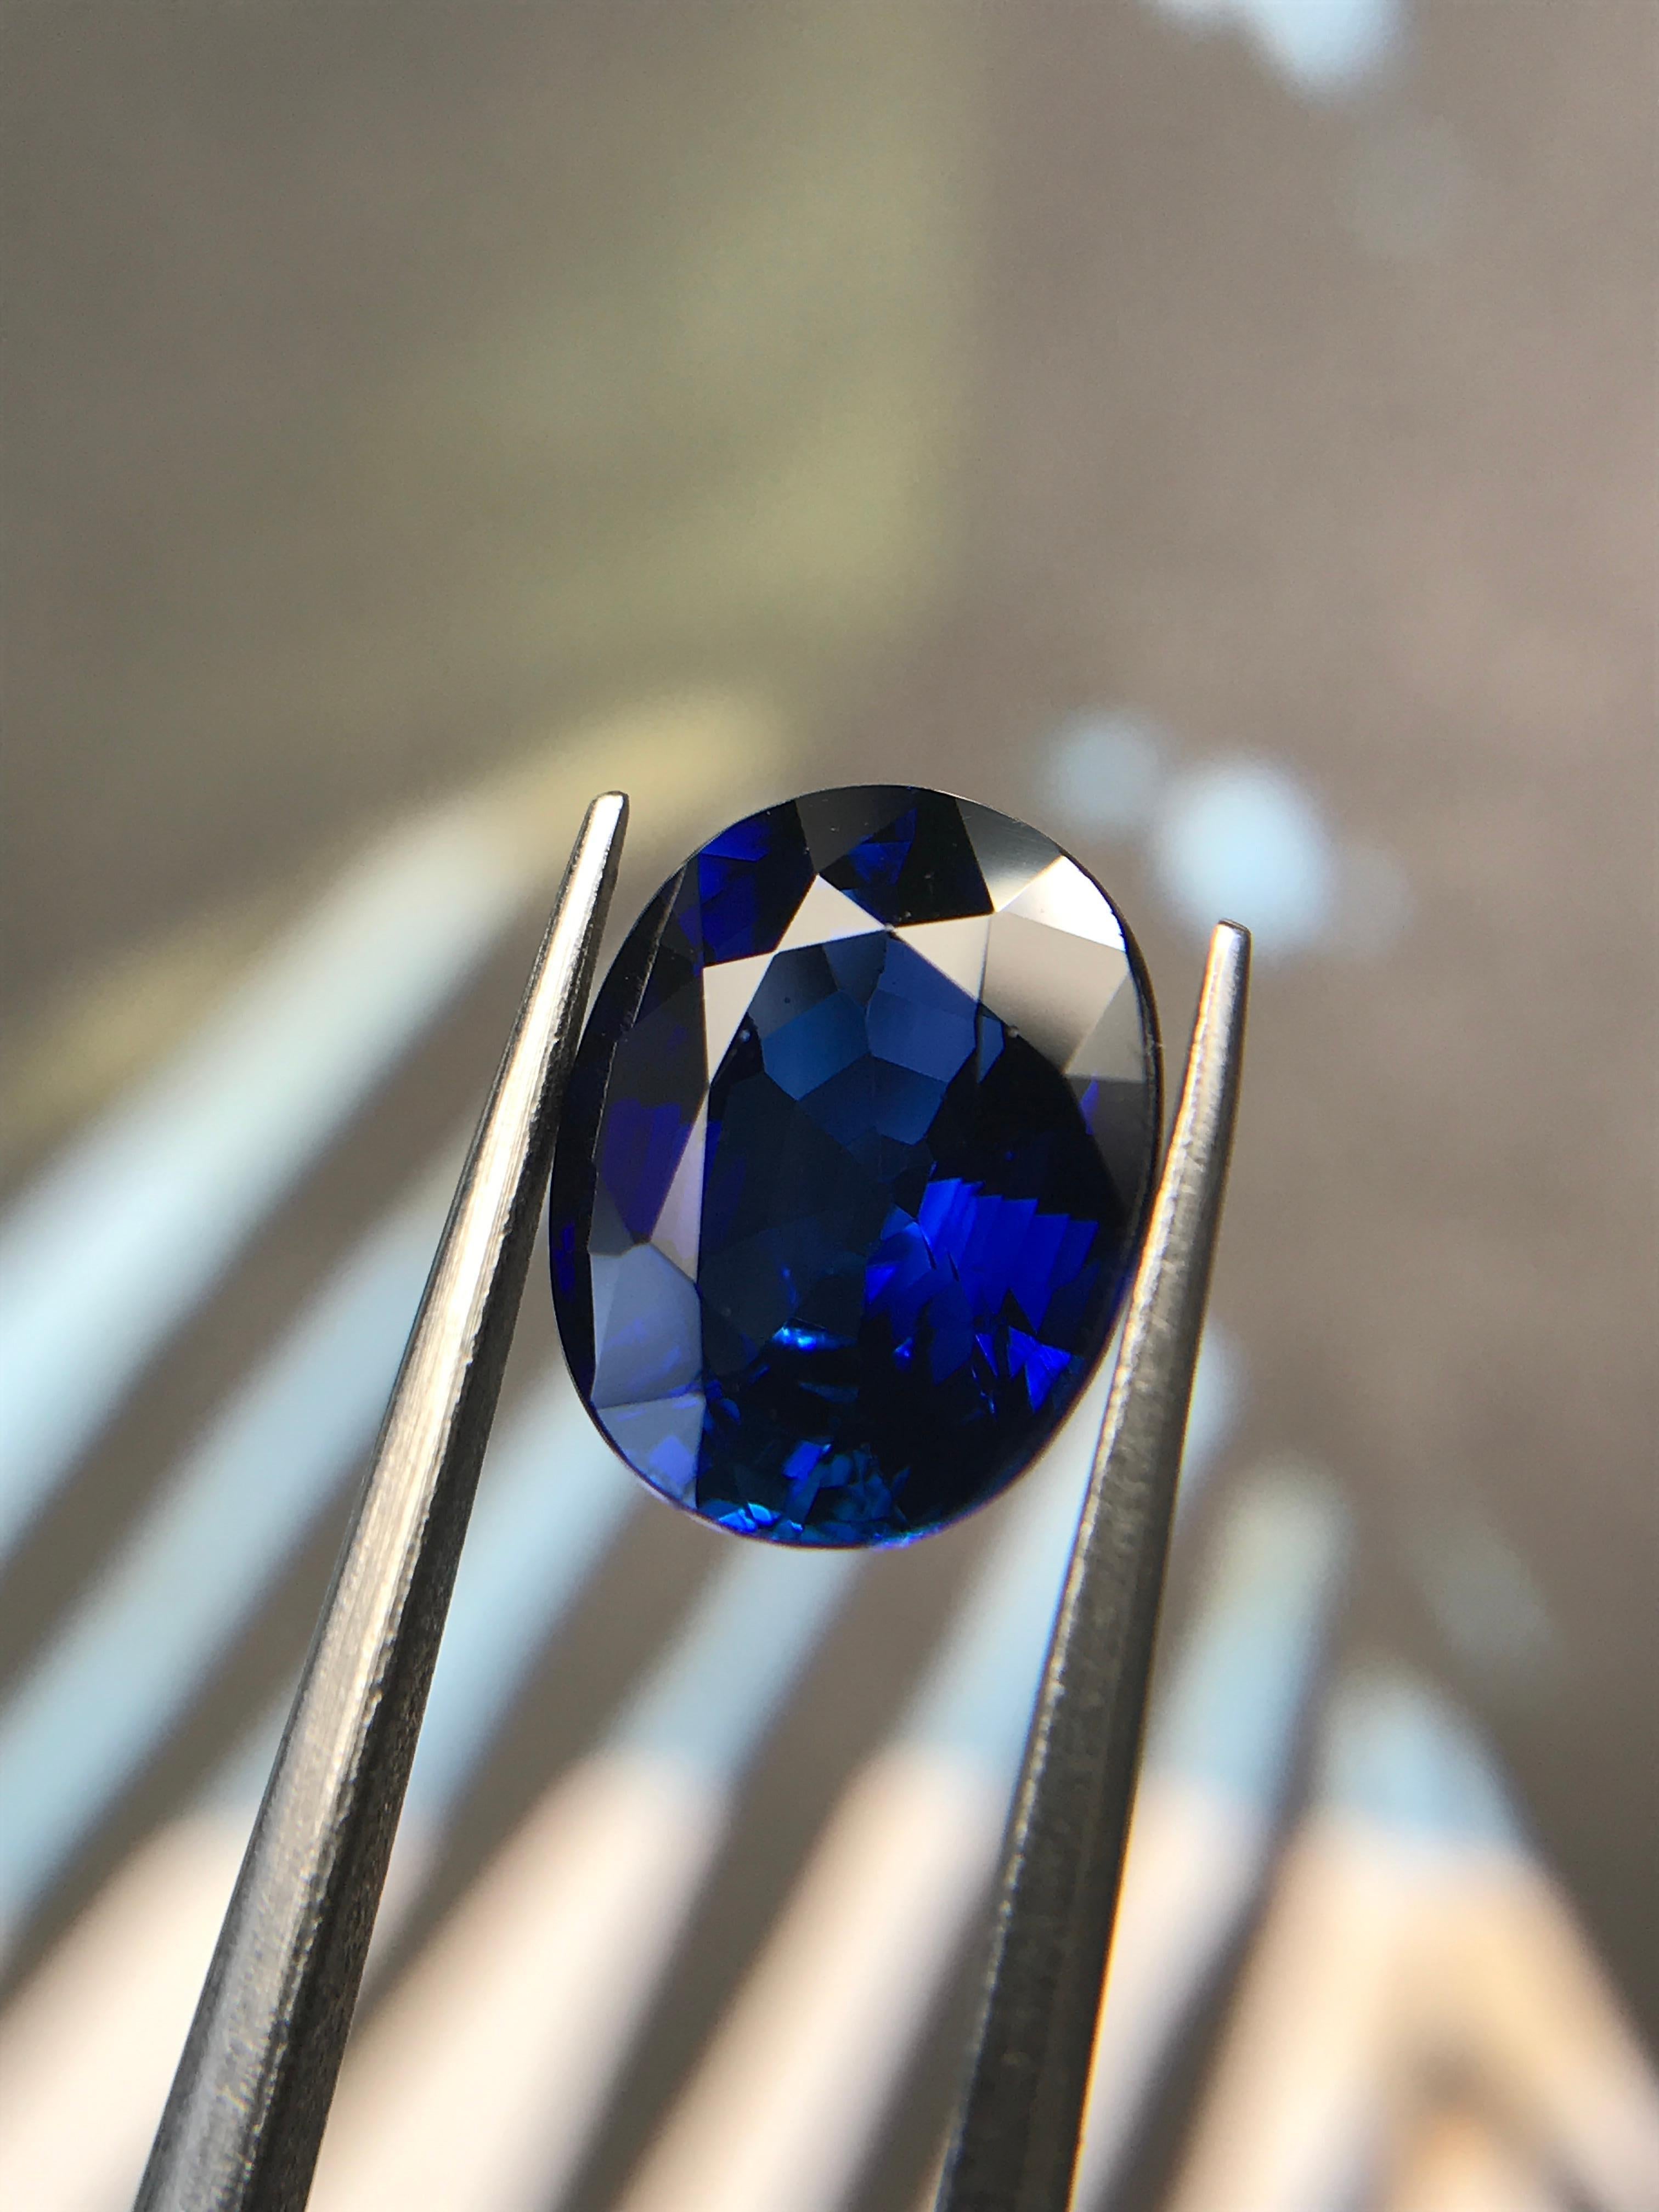 Éblouissant saphir ovale naturel de 2,88 carats d'une riche couleur bleu royal, parfait pour un bijou intemporel.

Nous sommes spécialisés dans les pierres précieuses de couleur et offrons un service de bijouterie sur mesure. Le délai de production